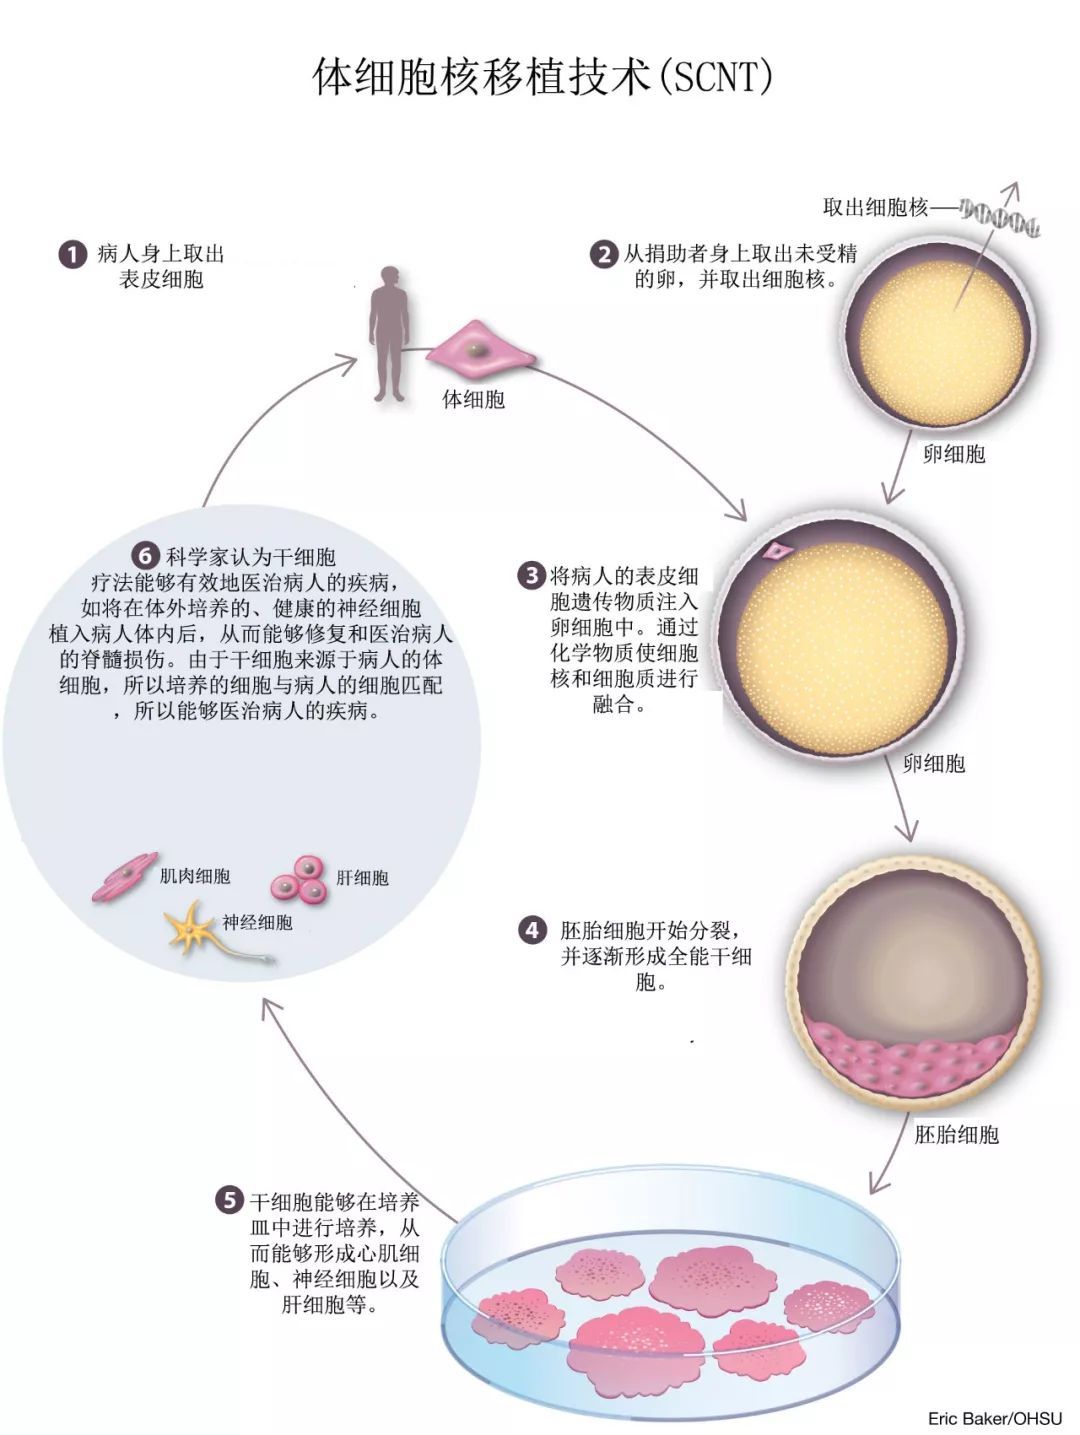 体细胞核移植技术(scnt)克隆胚胎干细胞流程图2014年,另一组研究团队